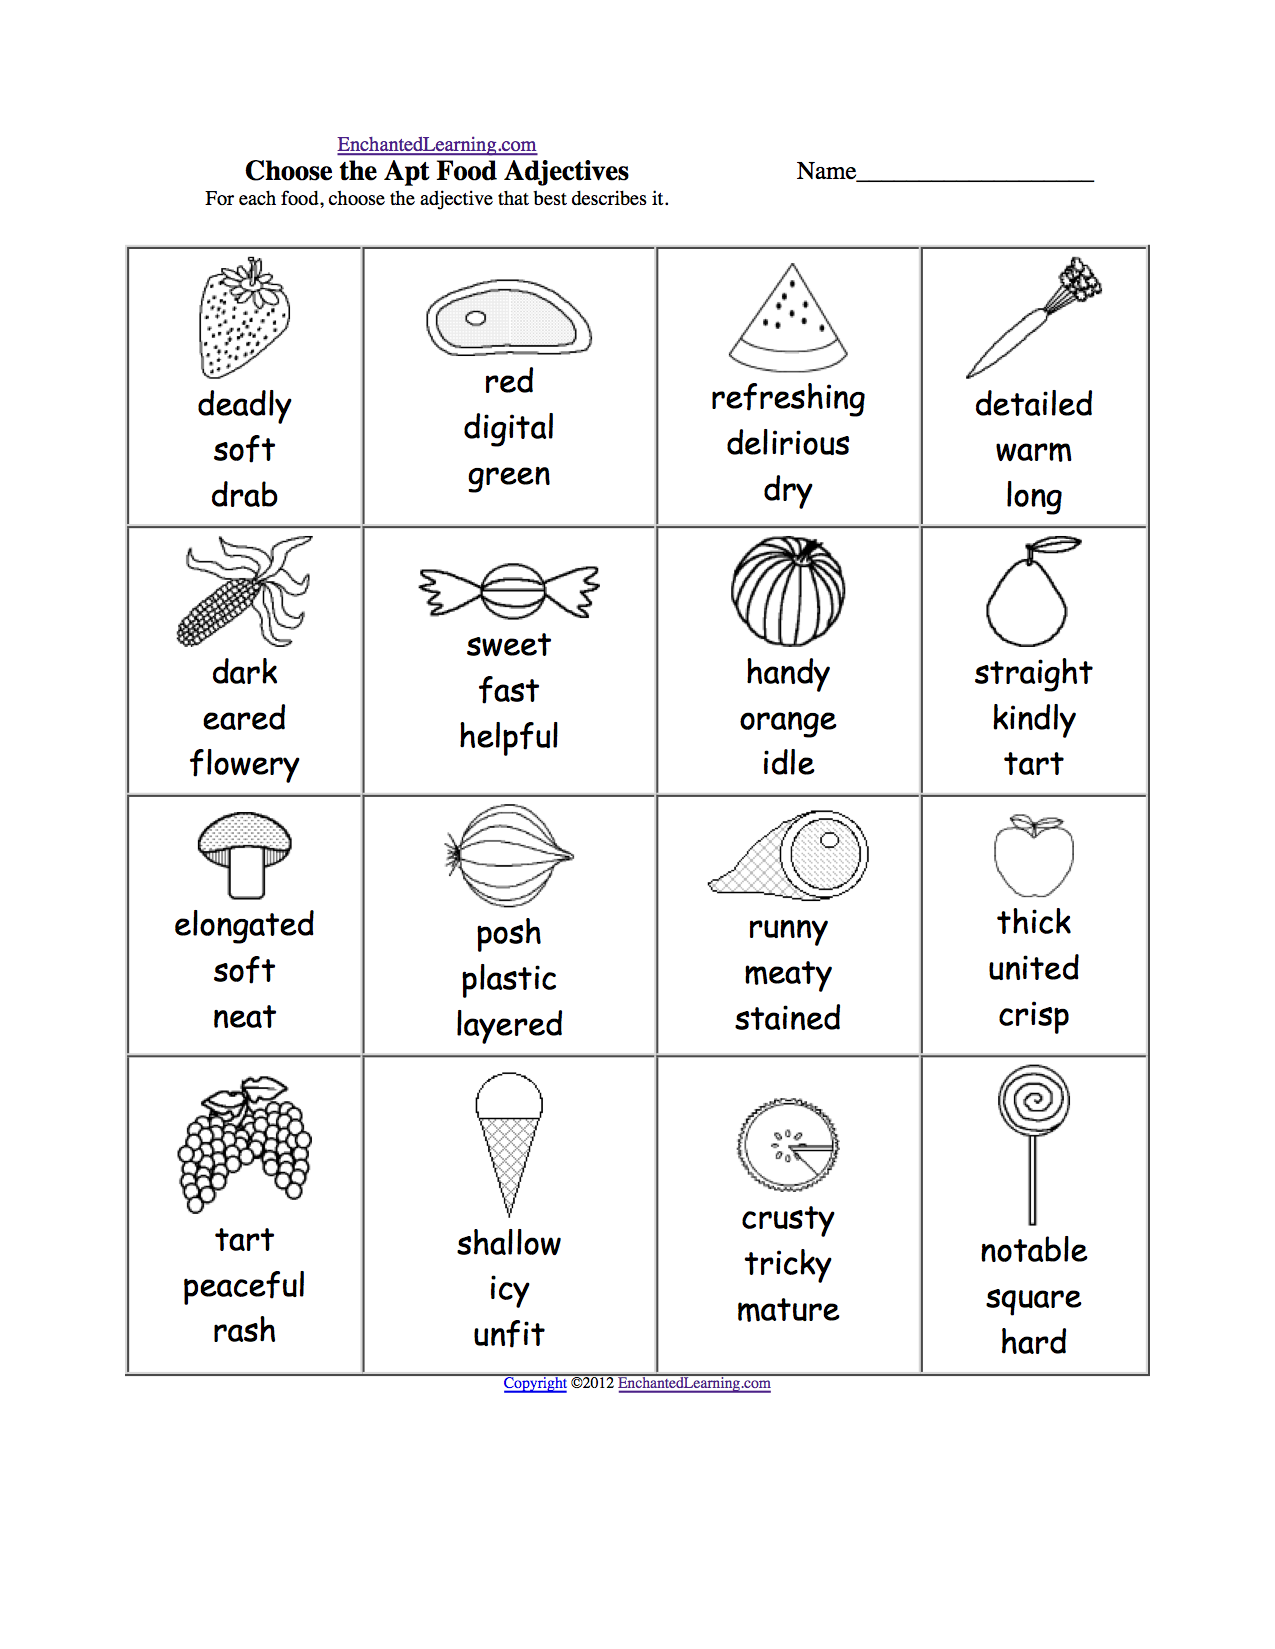 adjectives-worksheet-kidskonnect-adjective-worksheet-teaching-adjectives-2nd-grade-worksheets